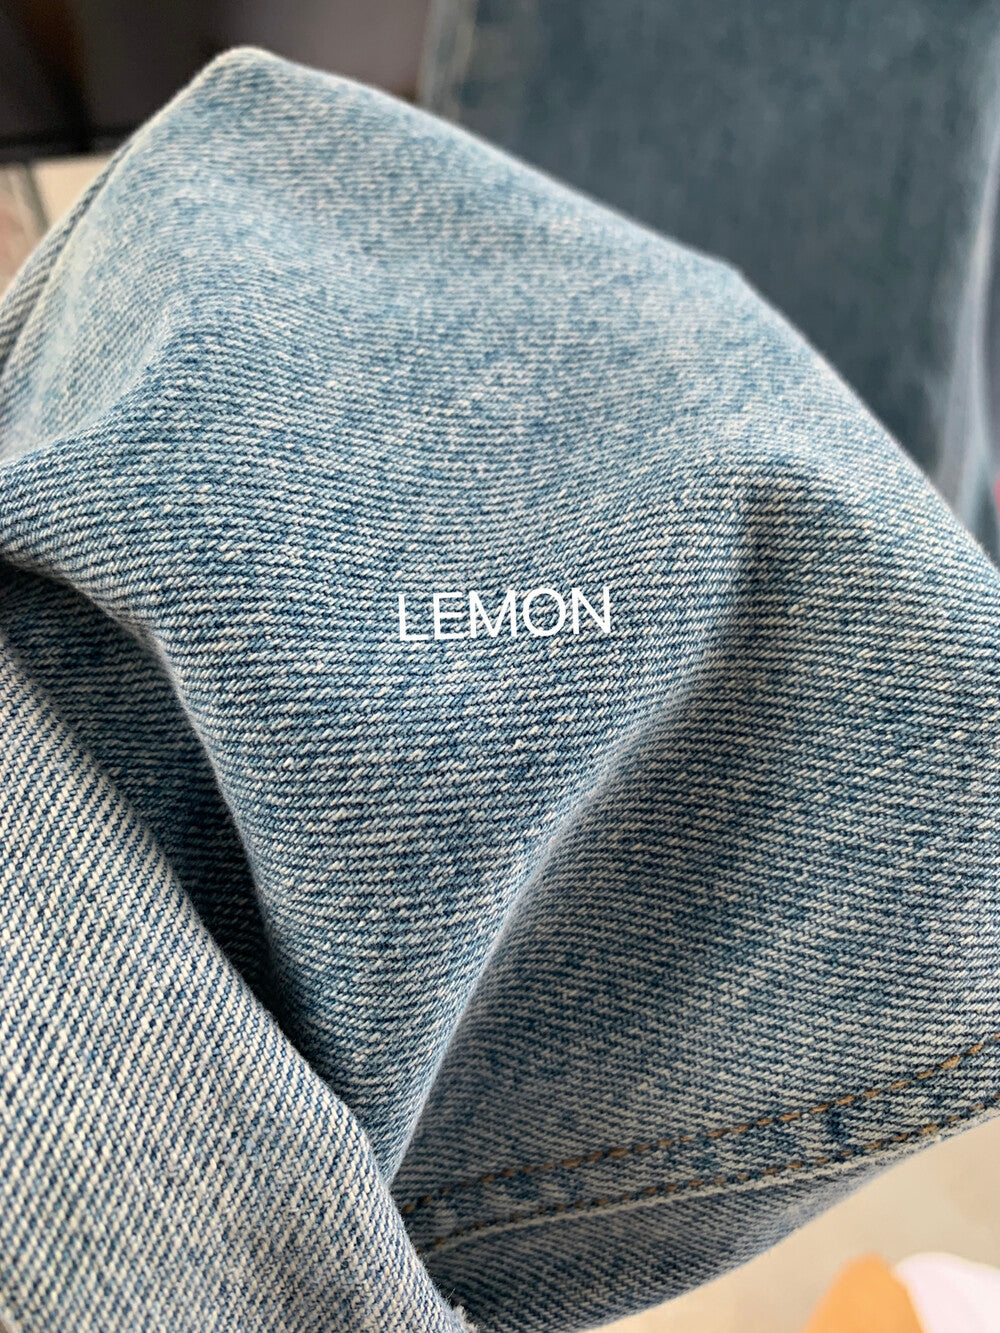 【LMM003】檸檬春夏簡約寬鬆高腰直筒藍色牛仔褲240223